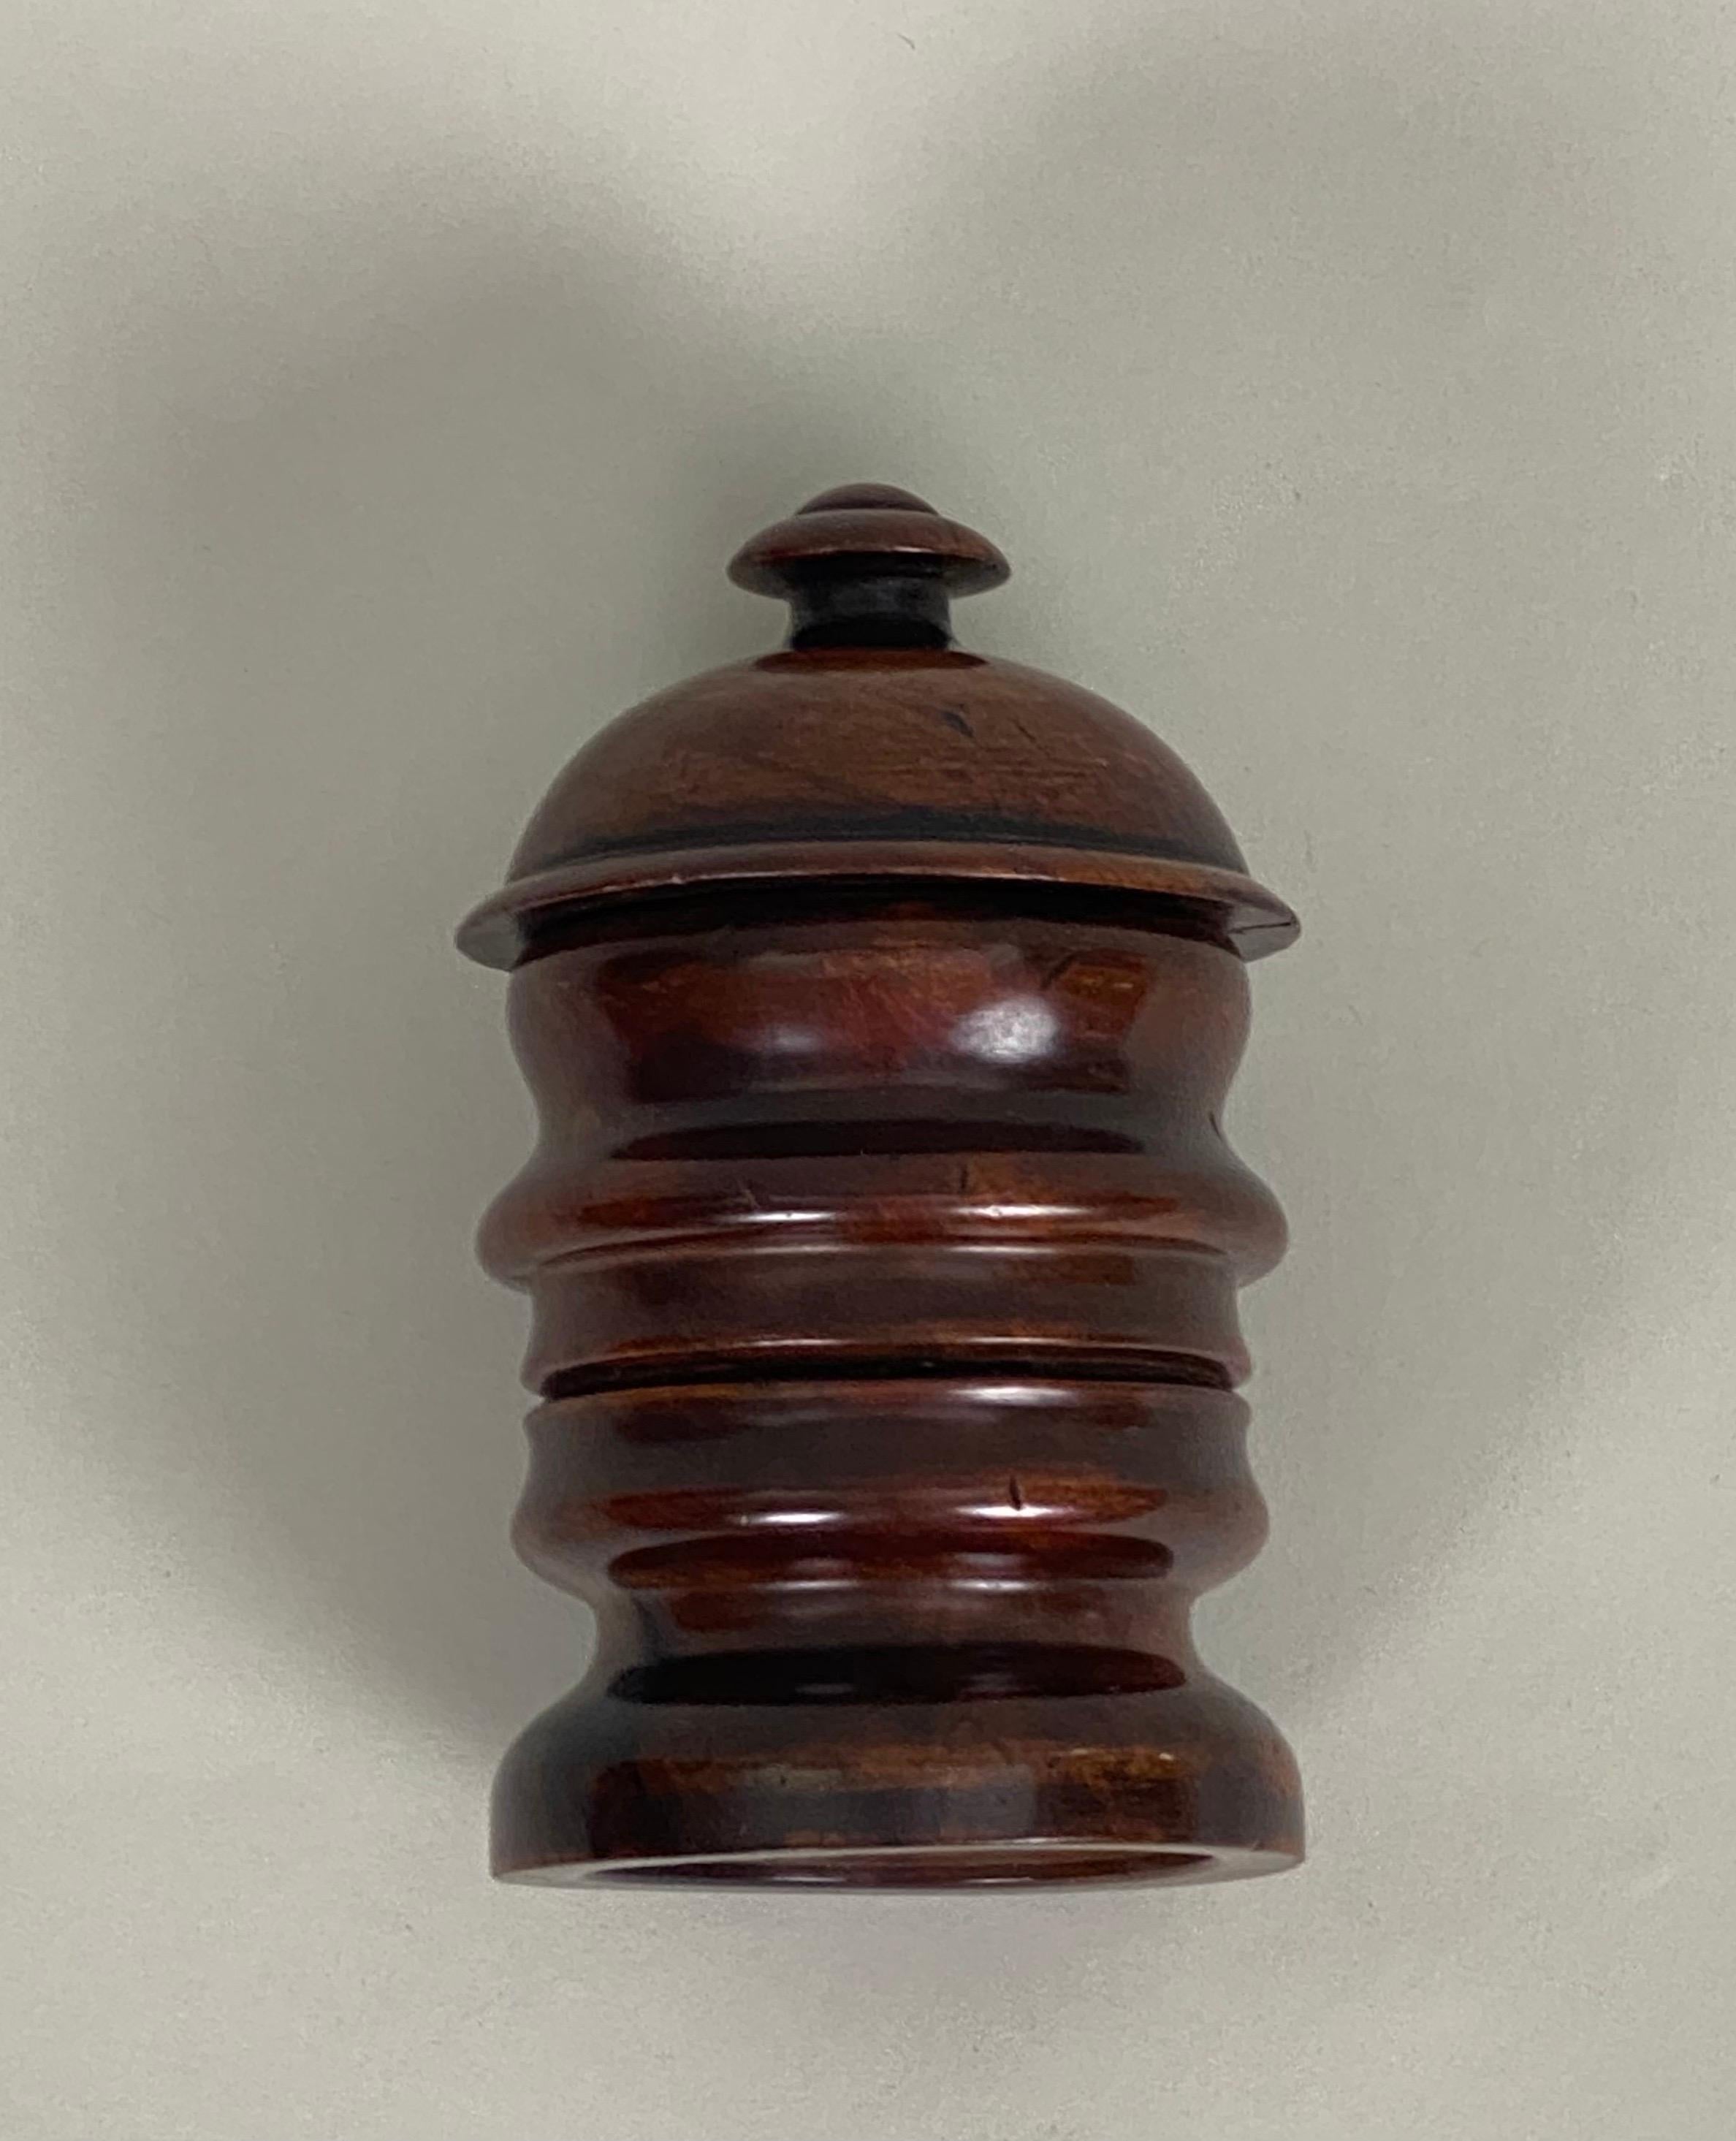 A rare turned treen tobacco jar, after a 'Profilo Continuo' by Renato Bertelli of Mussolini's Head.